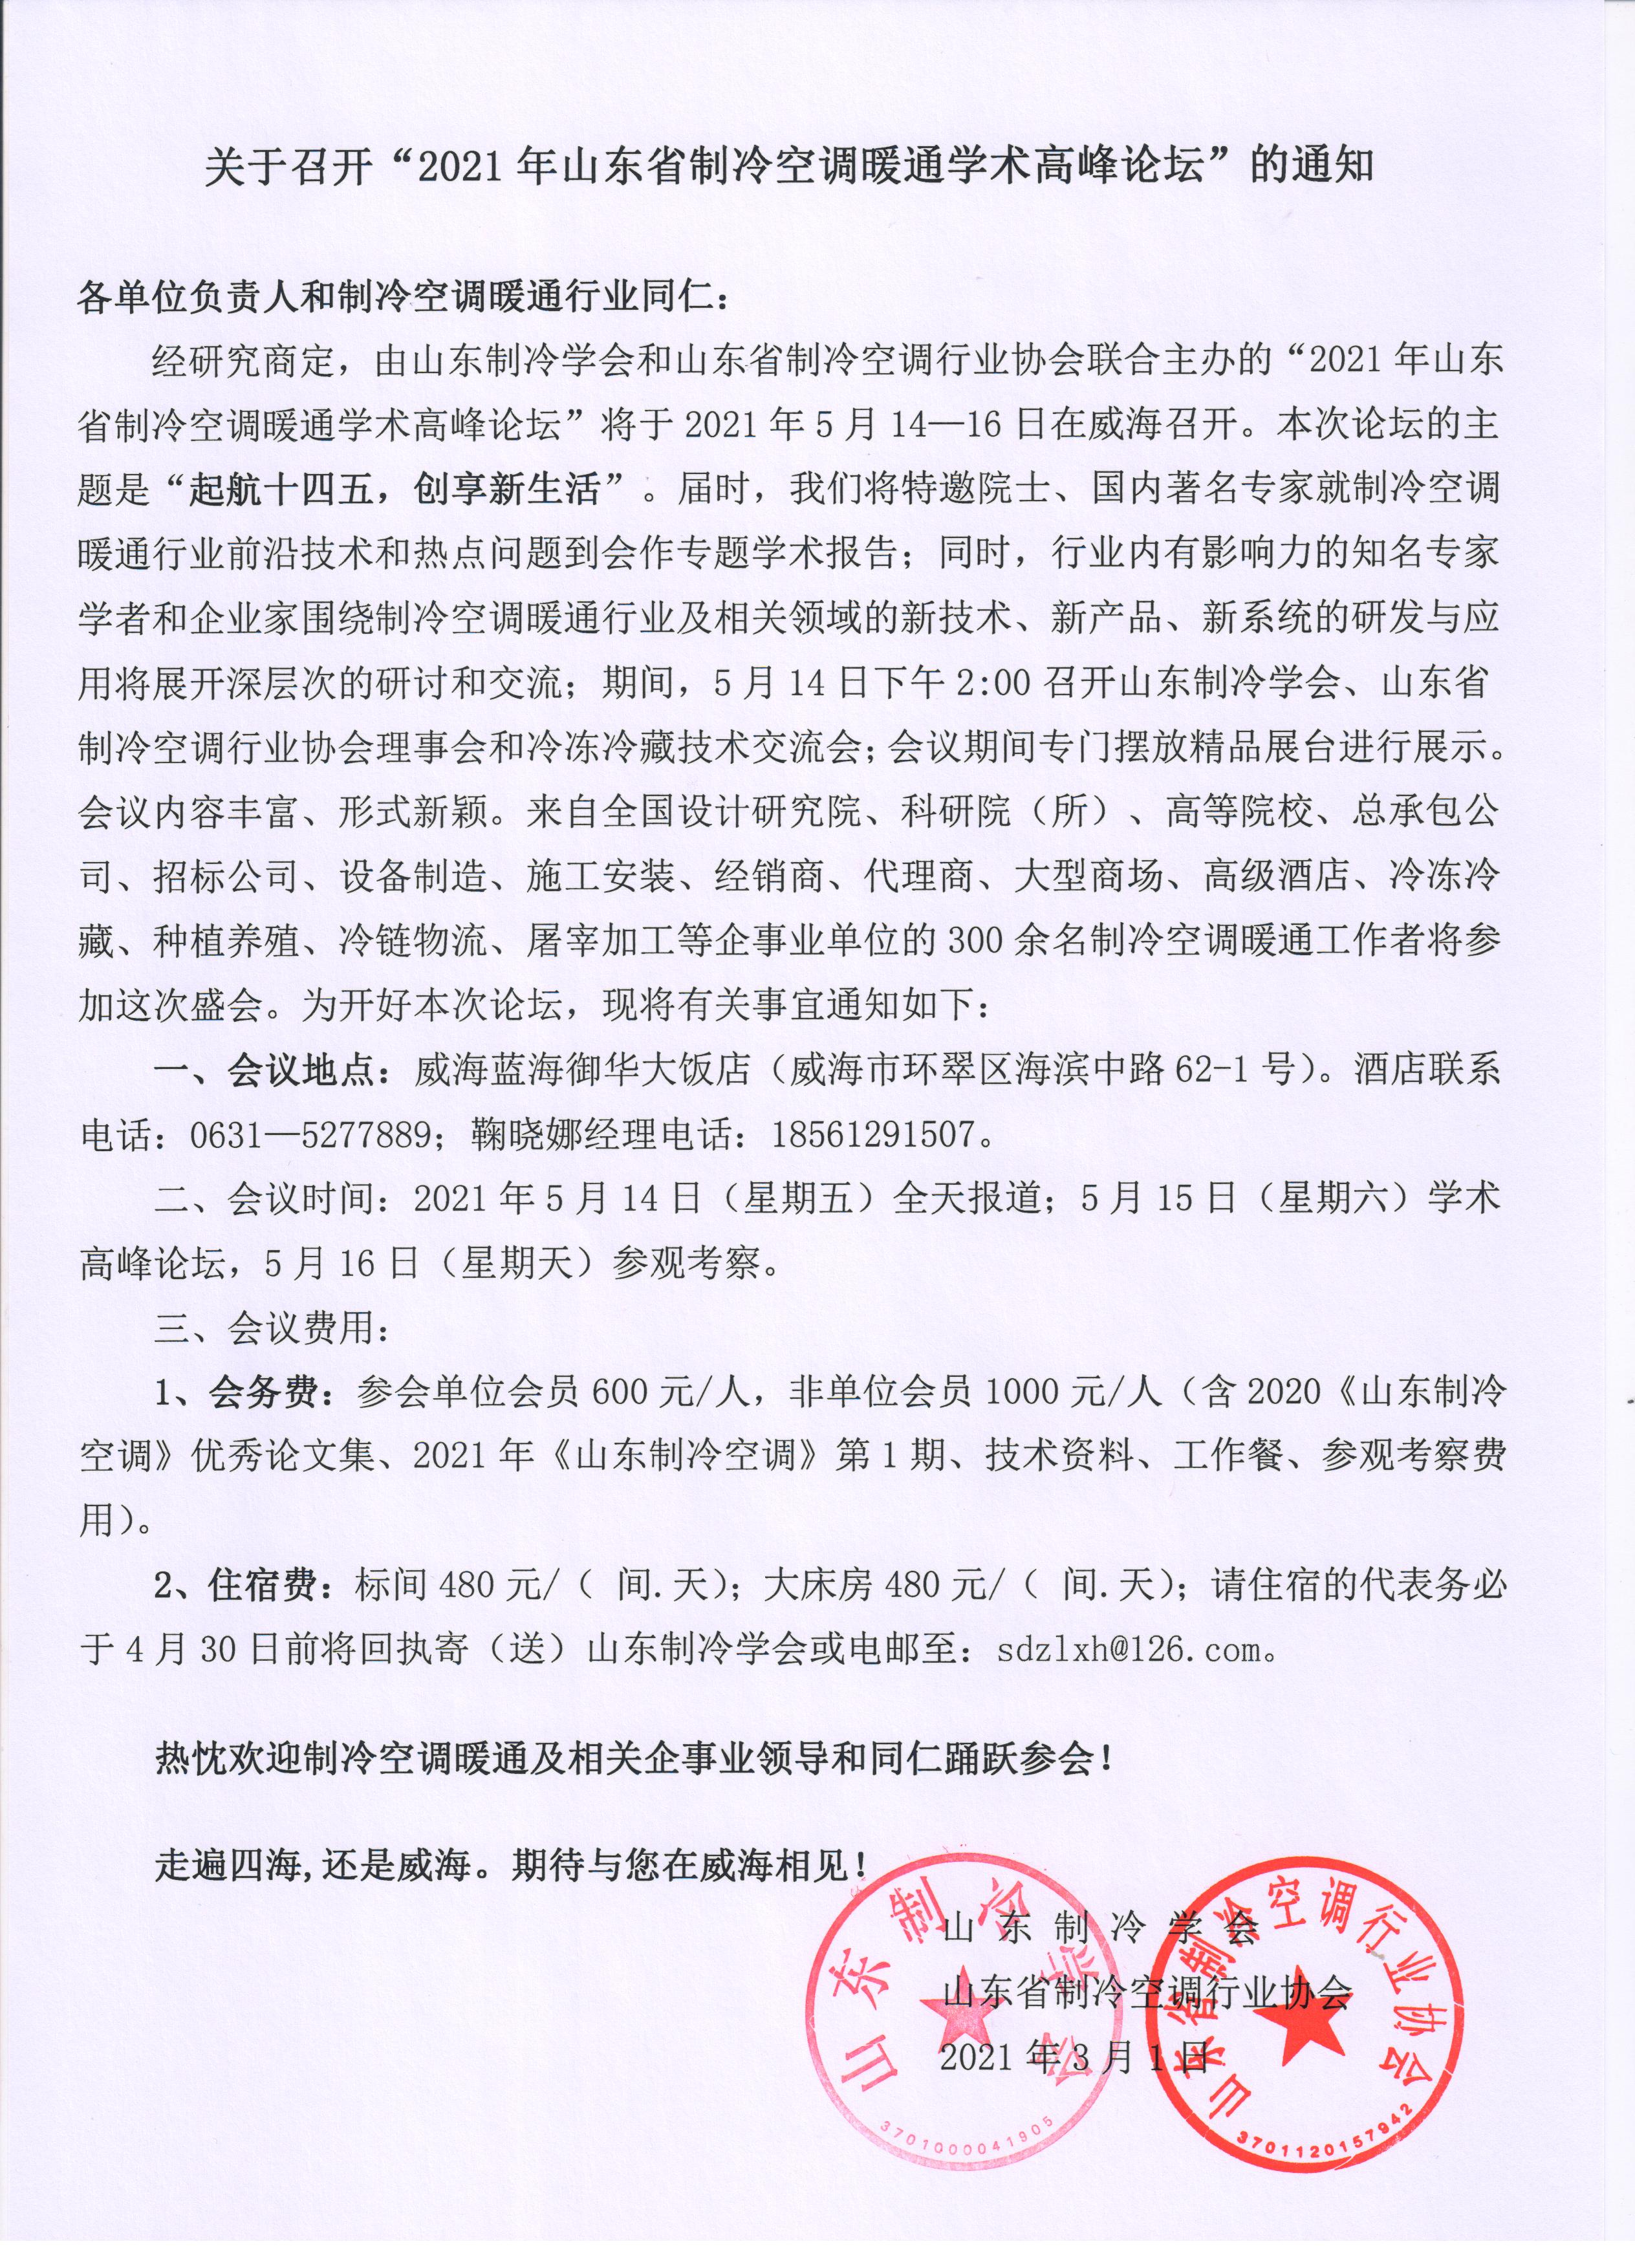 九州体育(中国)有限公司官网召开“2021年山东省制冷空调暖通学术高峰论坛”的通知